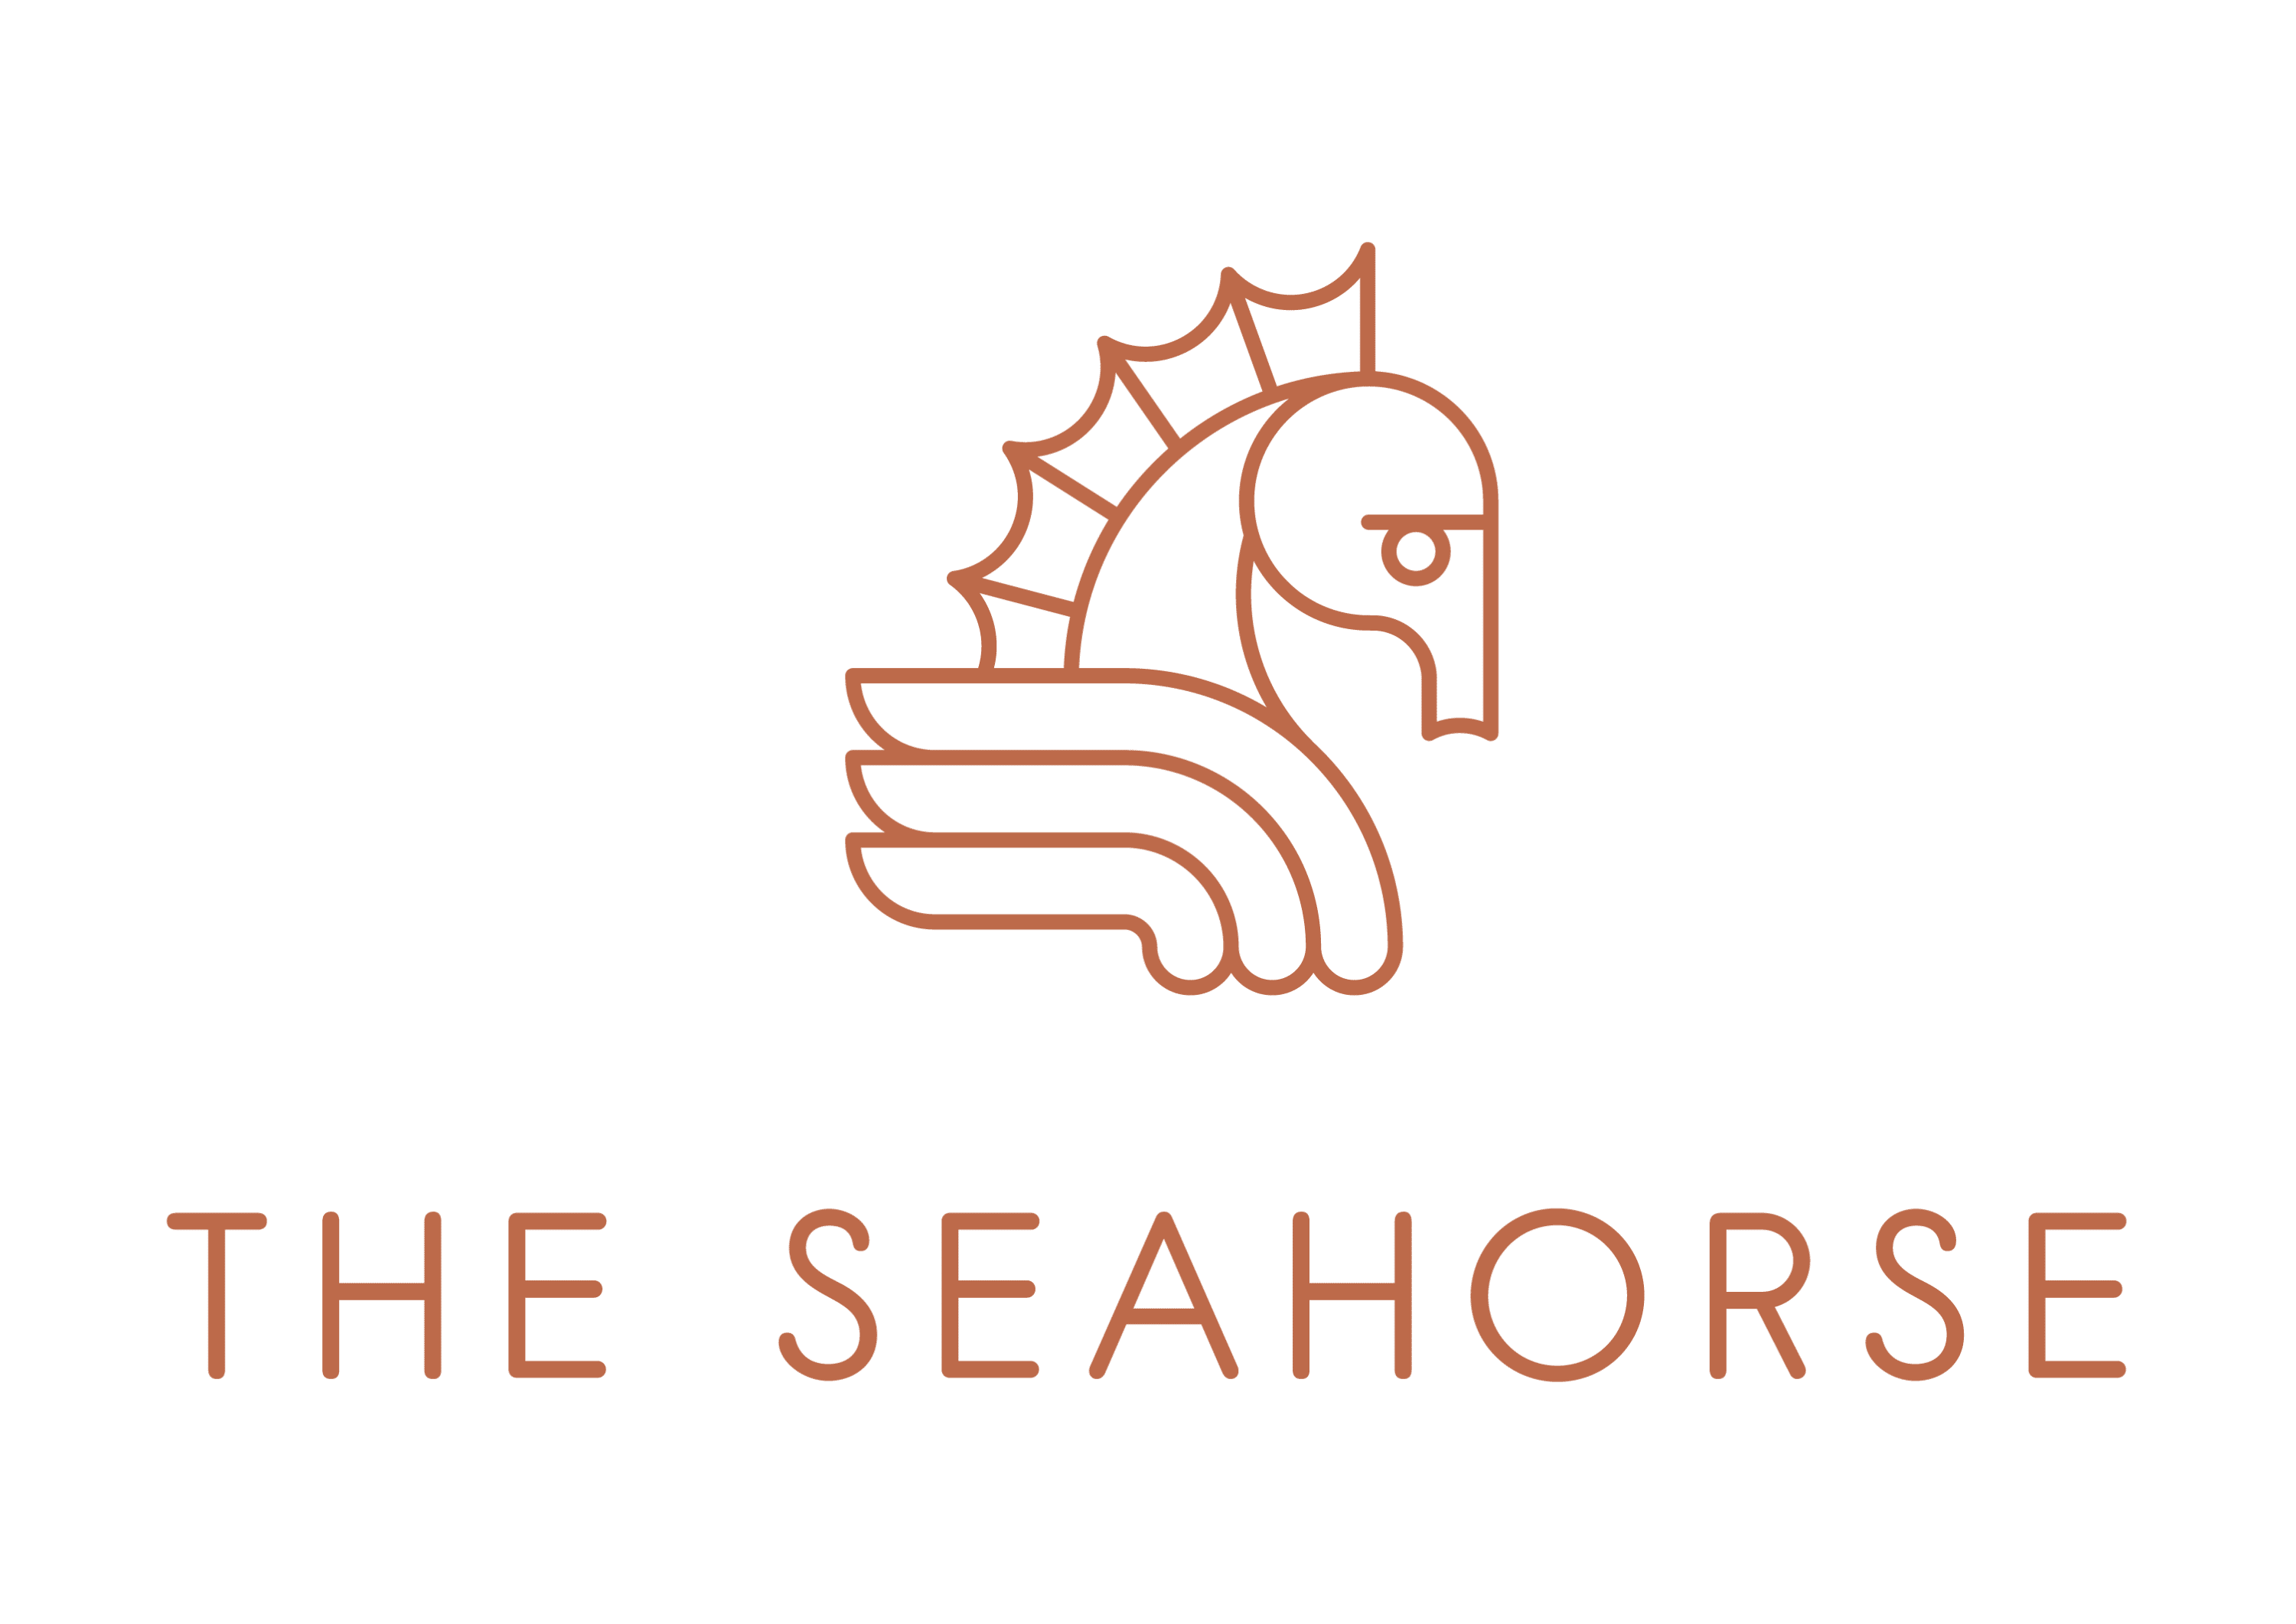 The Seahorse logo